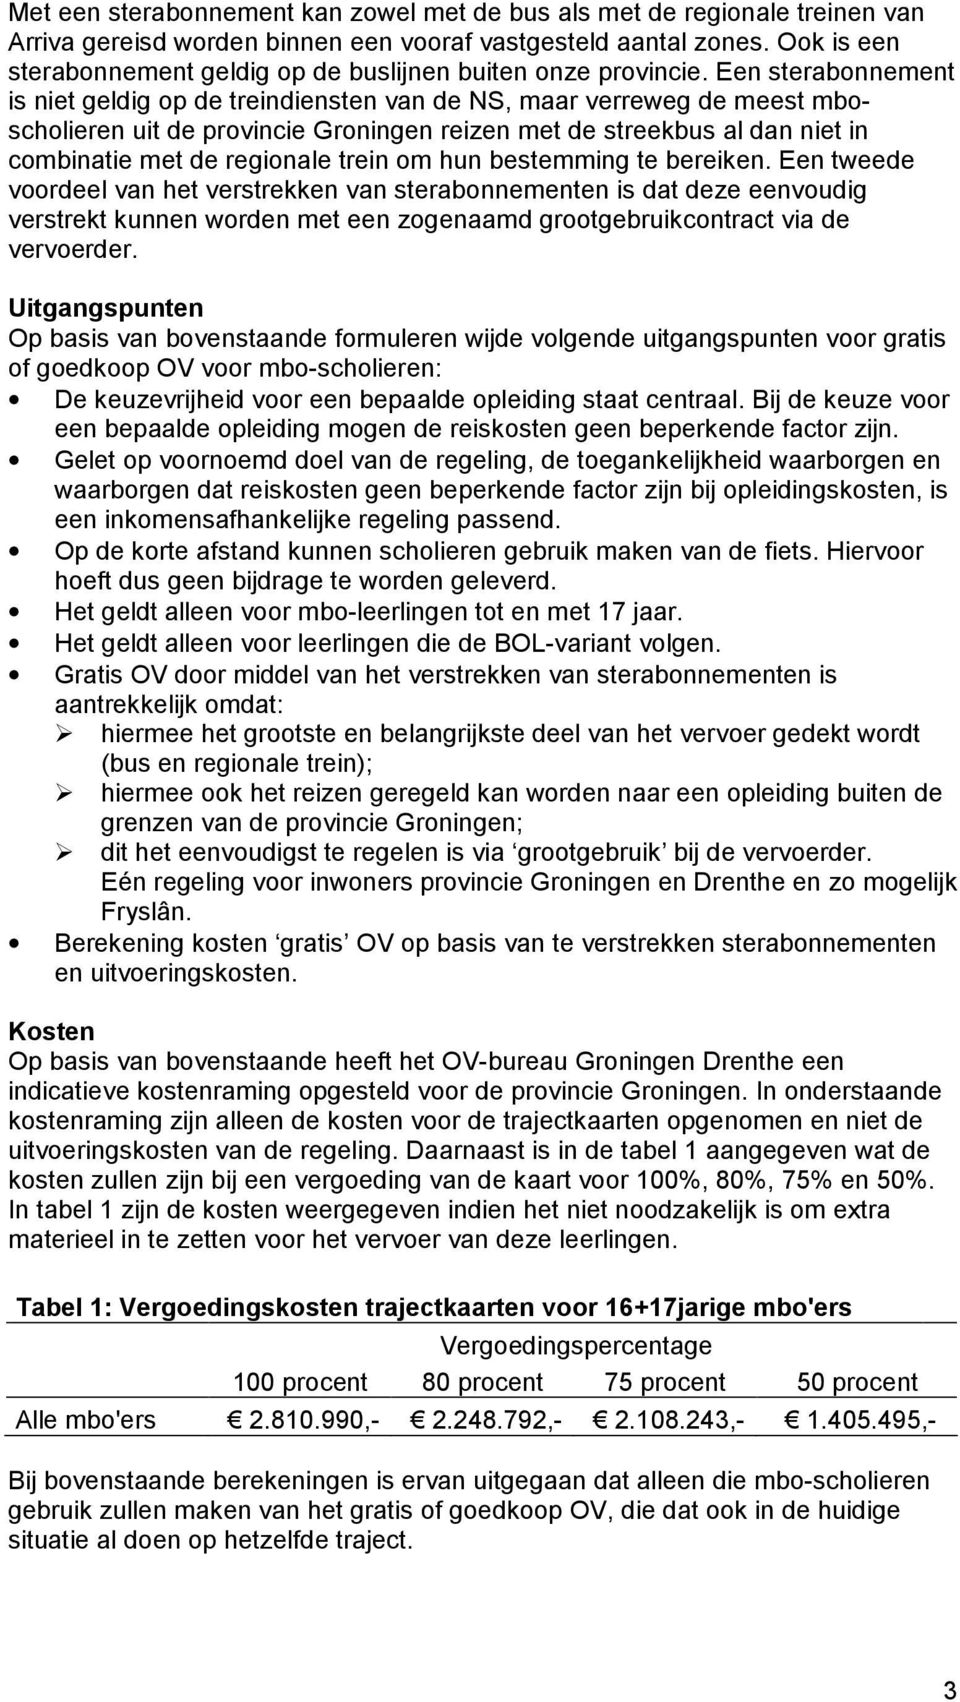 Een sterabonnement is niet geldig op de treindiensten van de NS, maar verreweg de meest mboscholieren uit de provincie Groningen reizen met de streekbus al dan niet in combinatie met de regionale